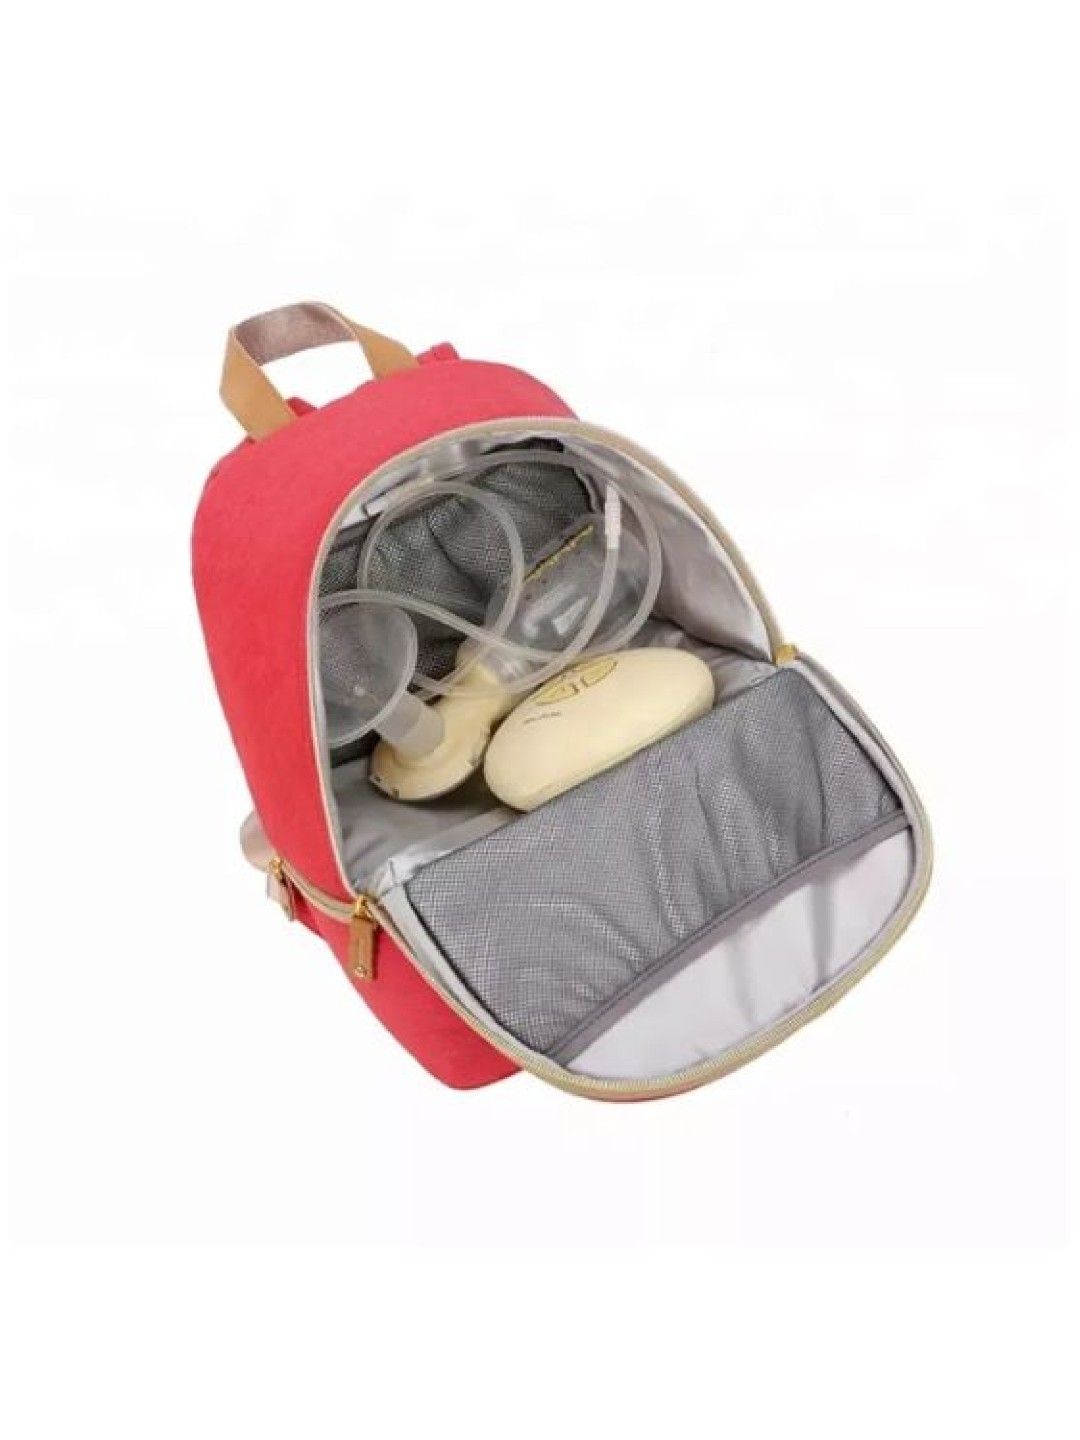 V-coool Thermal Cooler Breastmilk Backpack Bag (Light Red- Image 3)